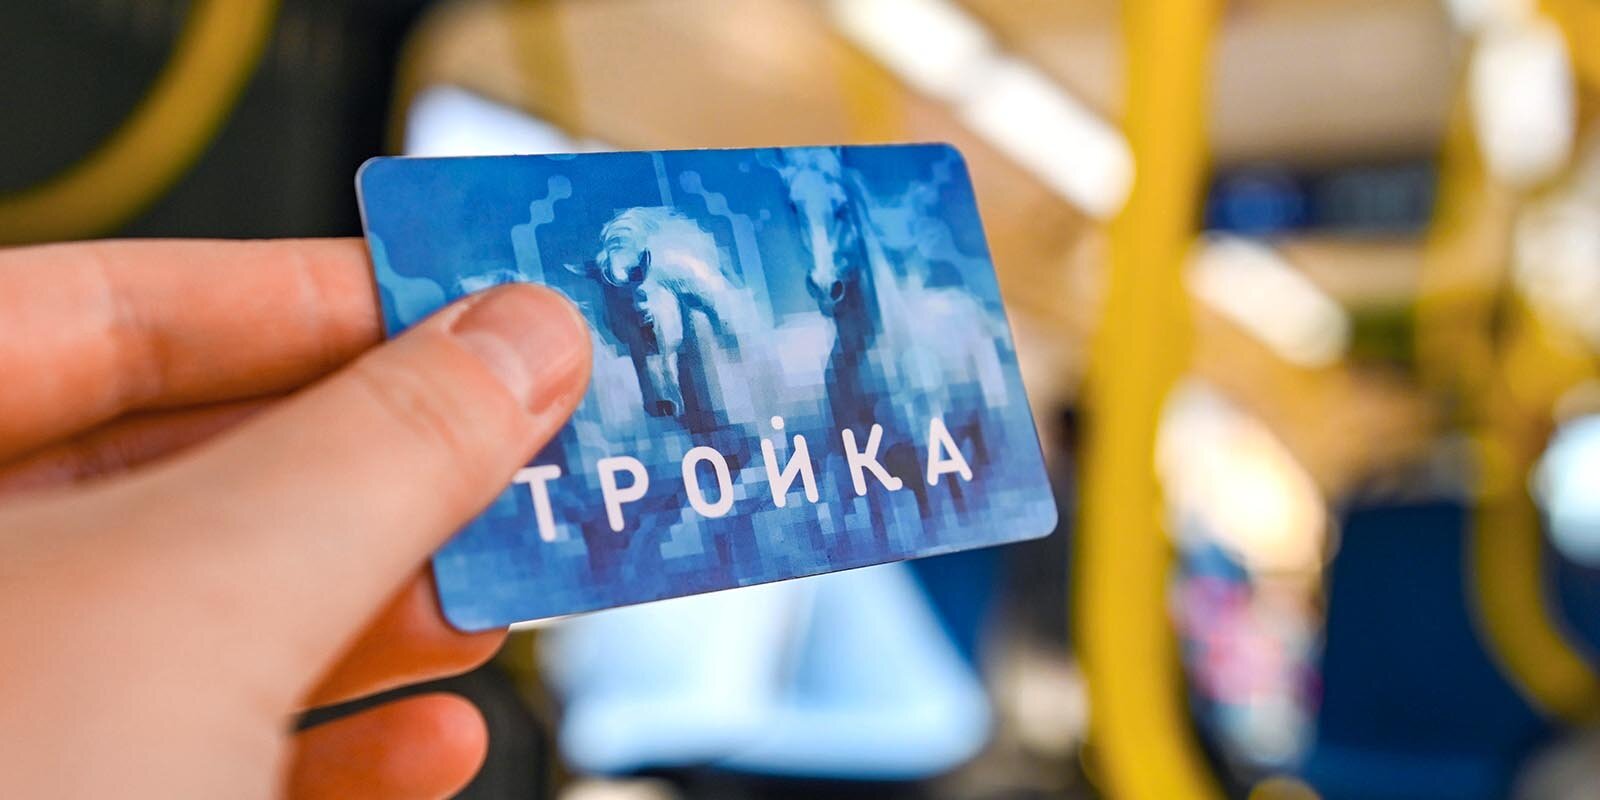 Произвести запись на «Тройку» жители столицы смогут через наземный транспорт. Фото: mos.ru